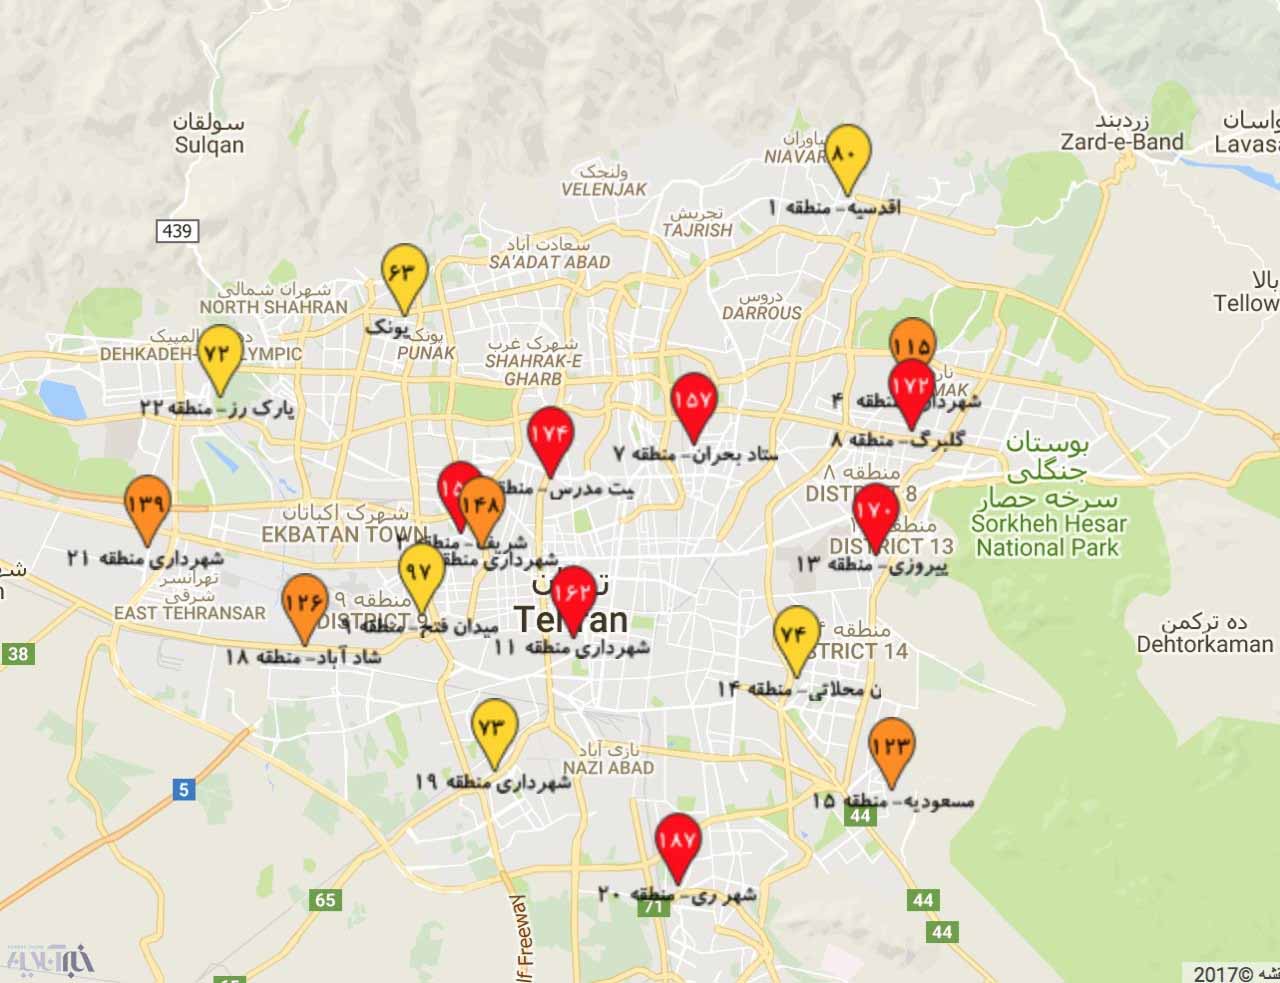 نقشه آلودگی هوای تهران